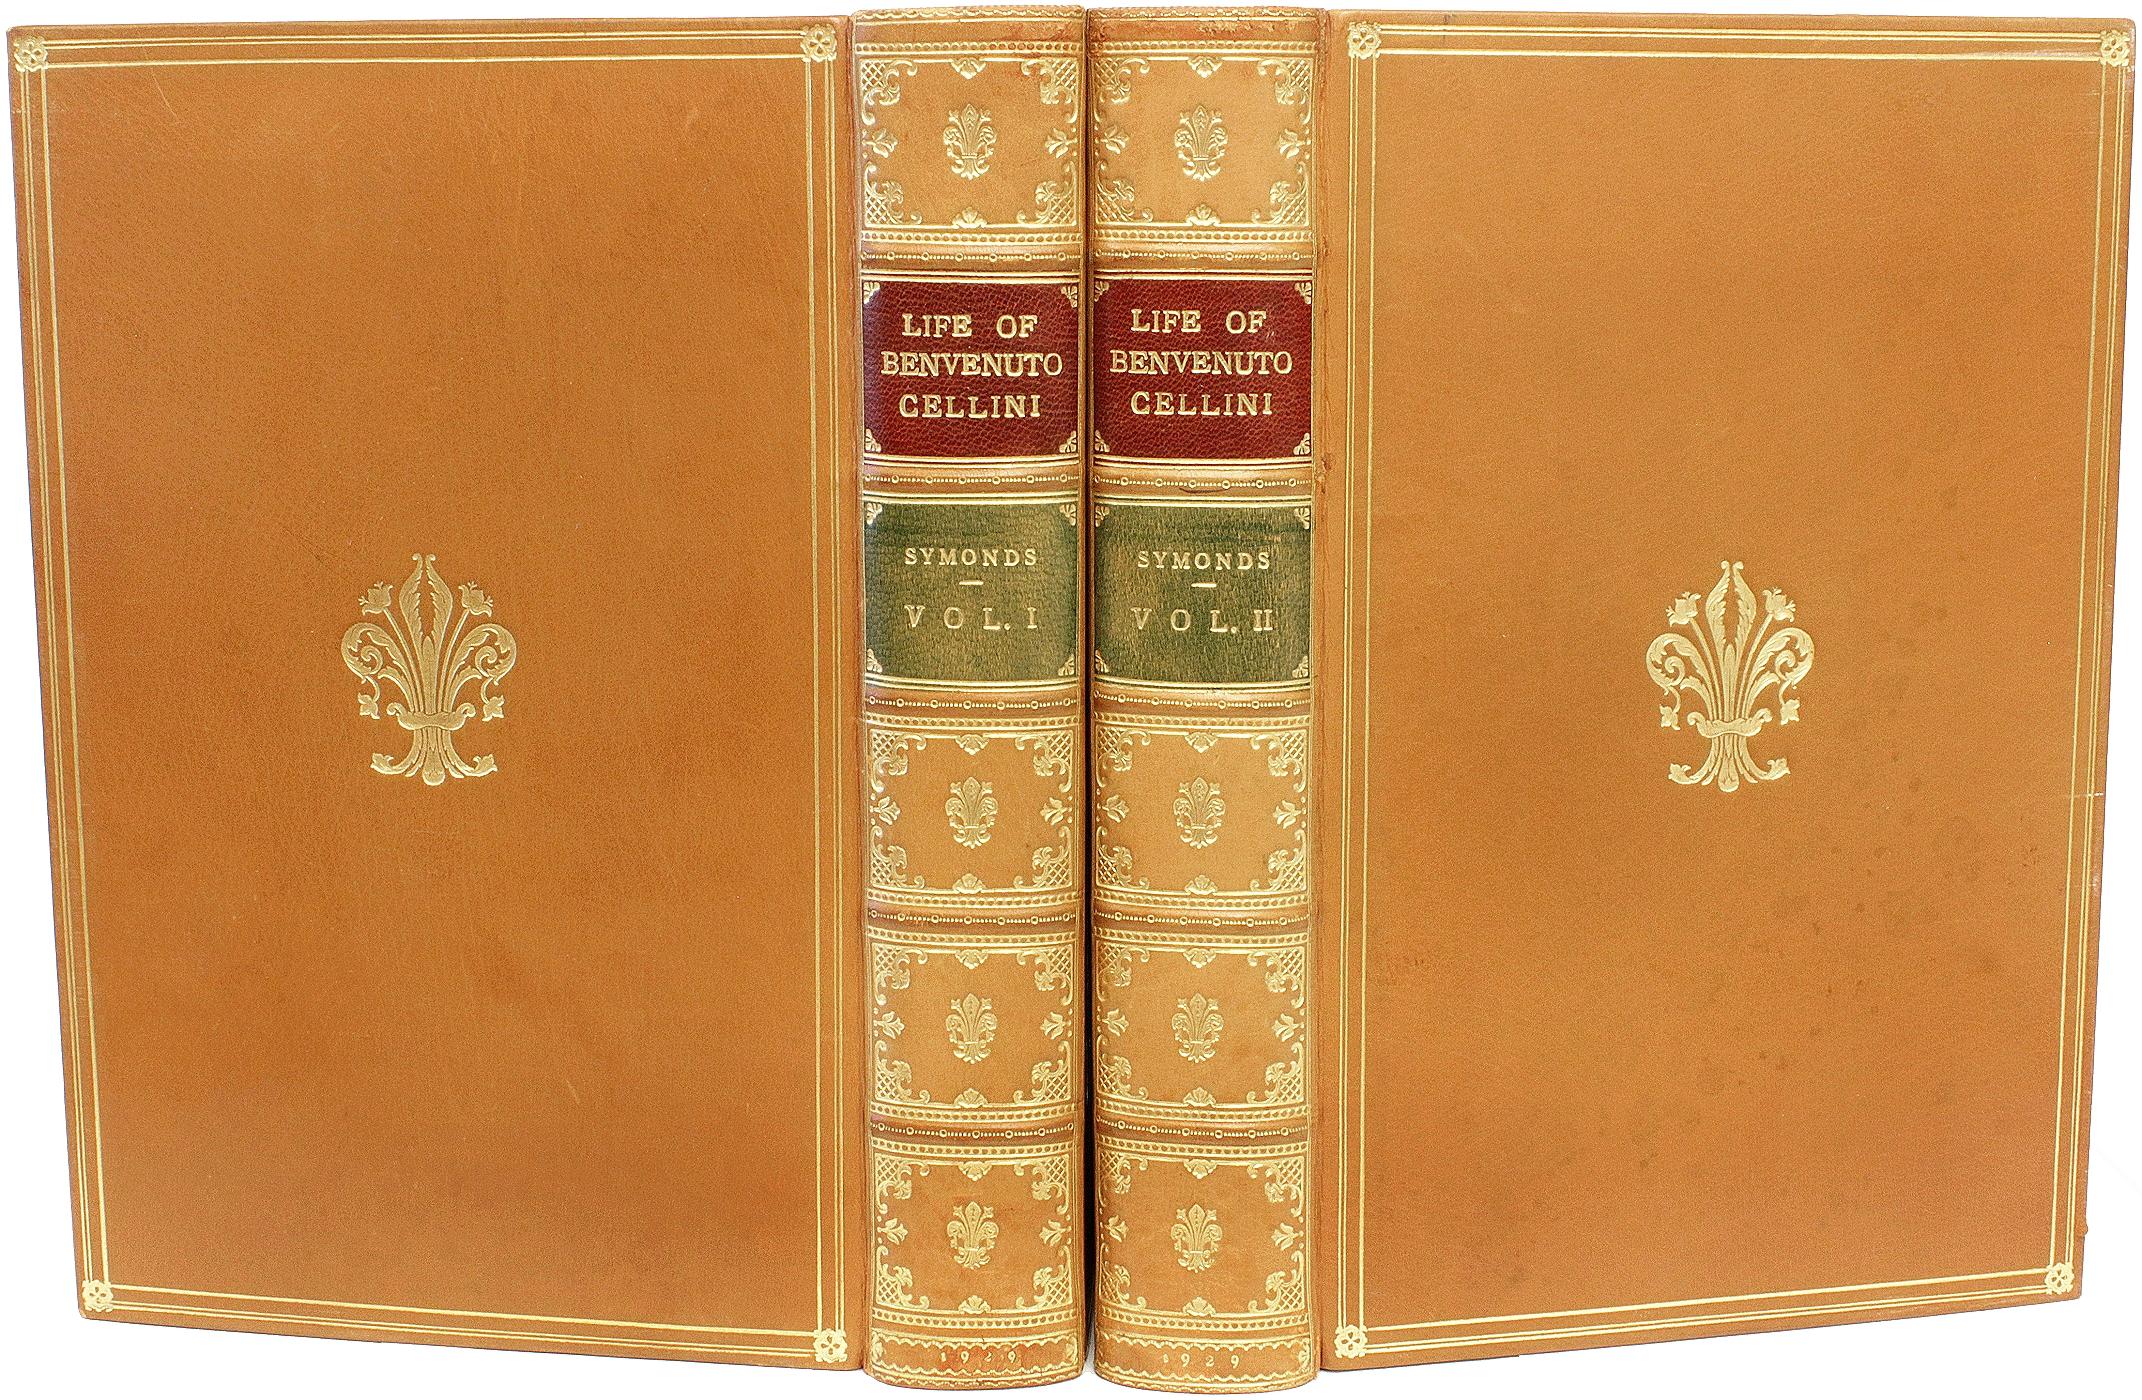 AUTEUR : SYMONDS, John Addington - traducteur. 

TITRE : La vie de Benvenuto Cellini écrite par lui-même.

ÉDITEUR : NY : Brentano's, 1929.

DESCRIPTION : 2 volumes, 9-1/16